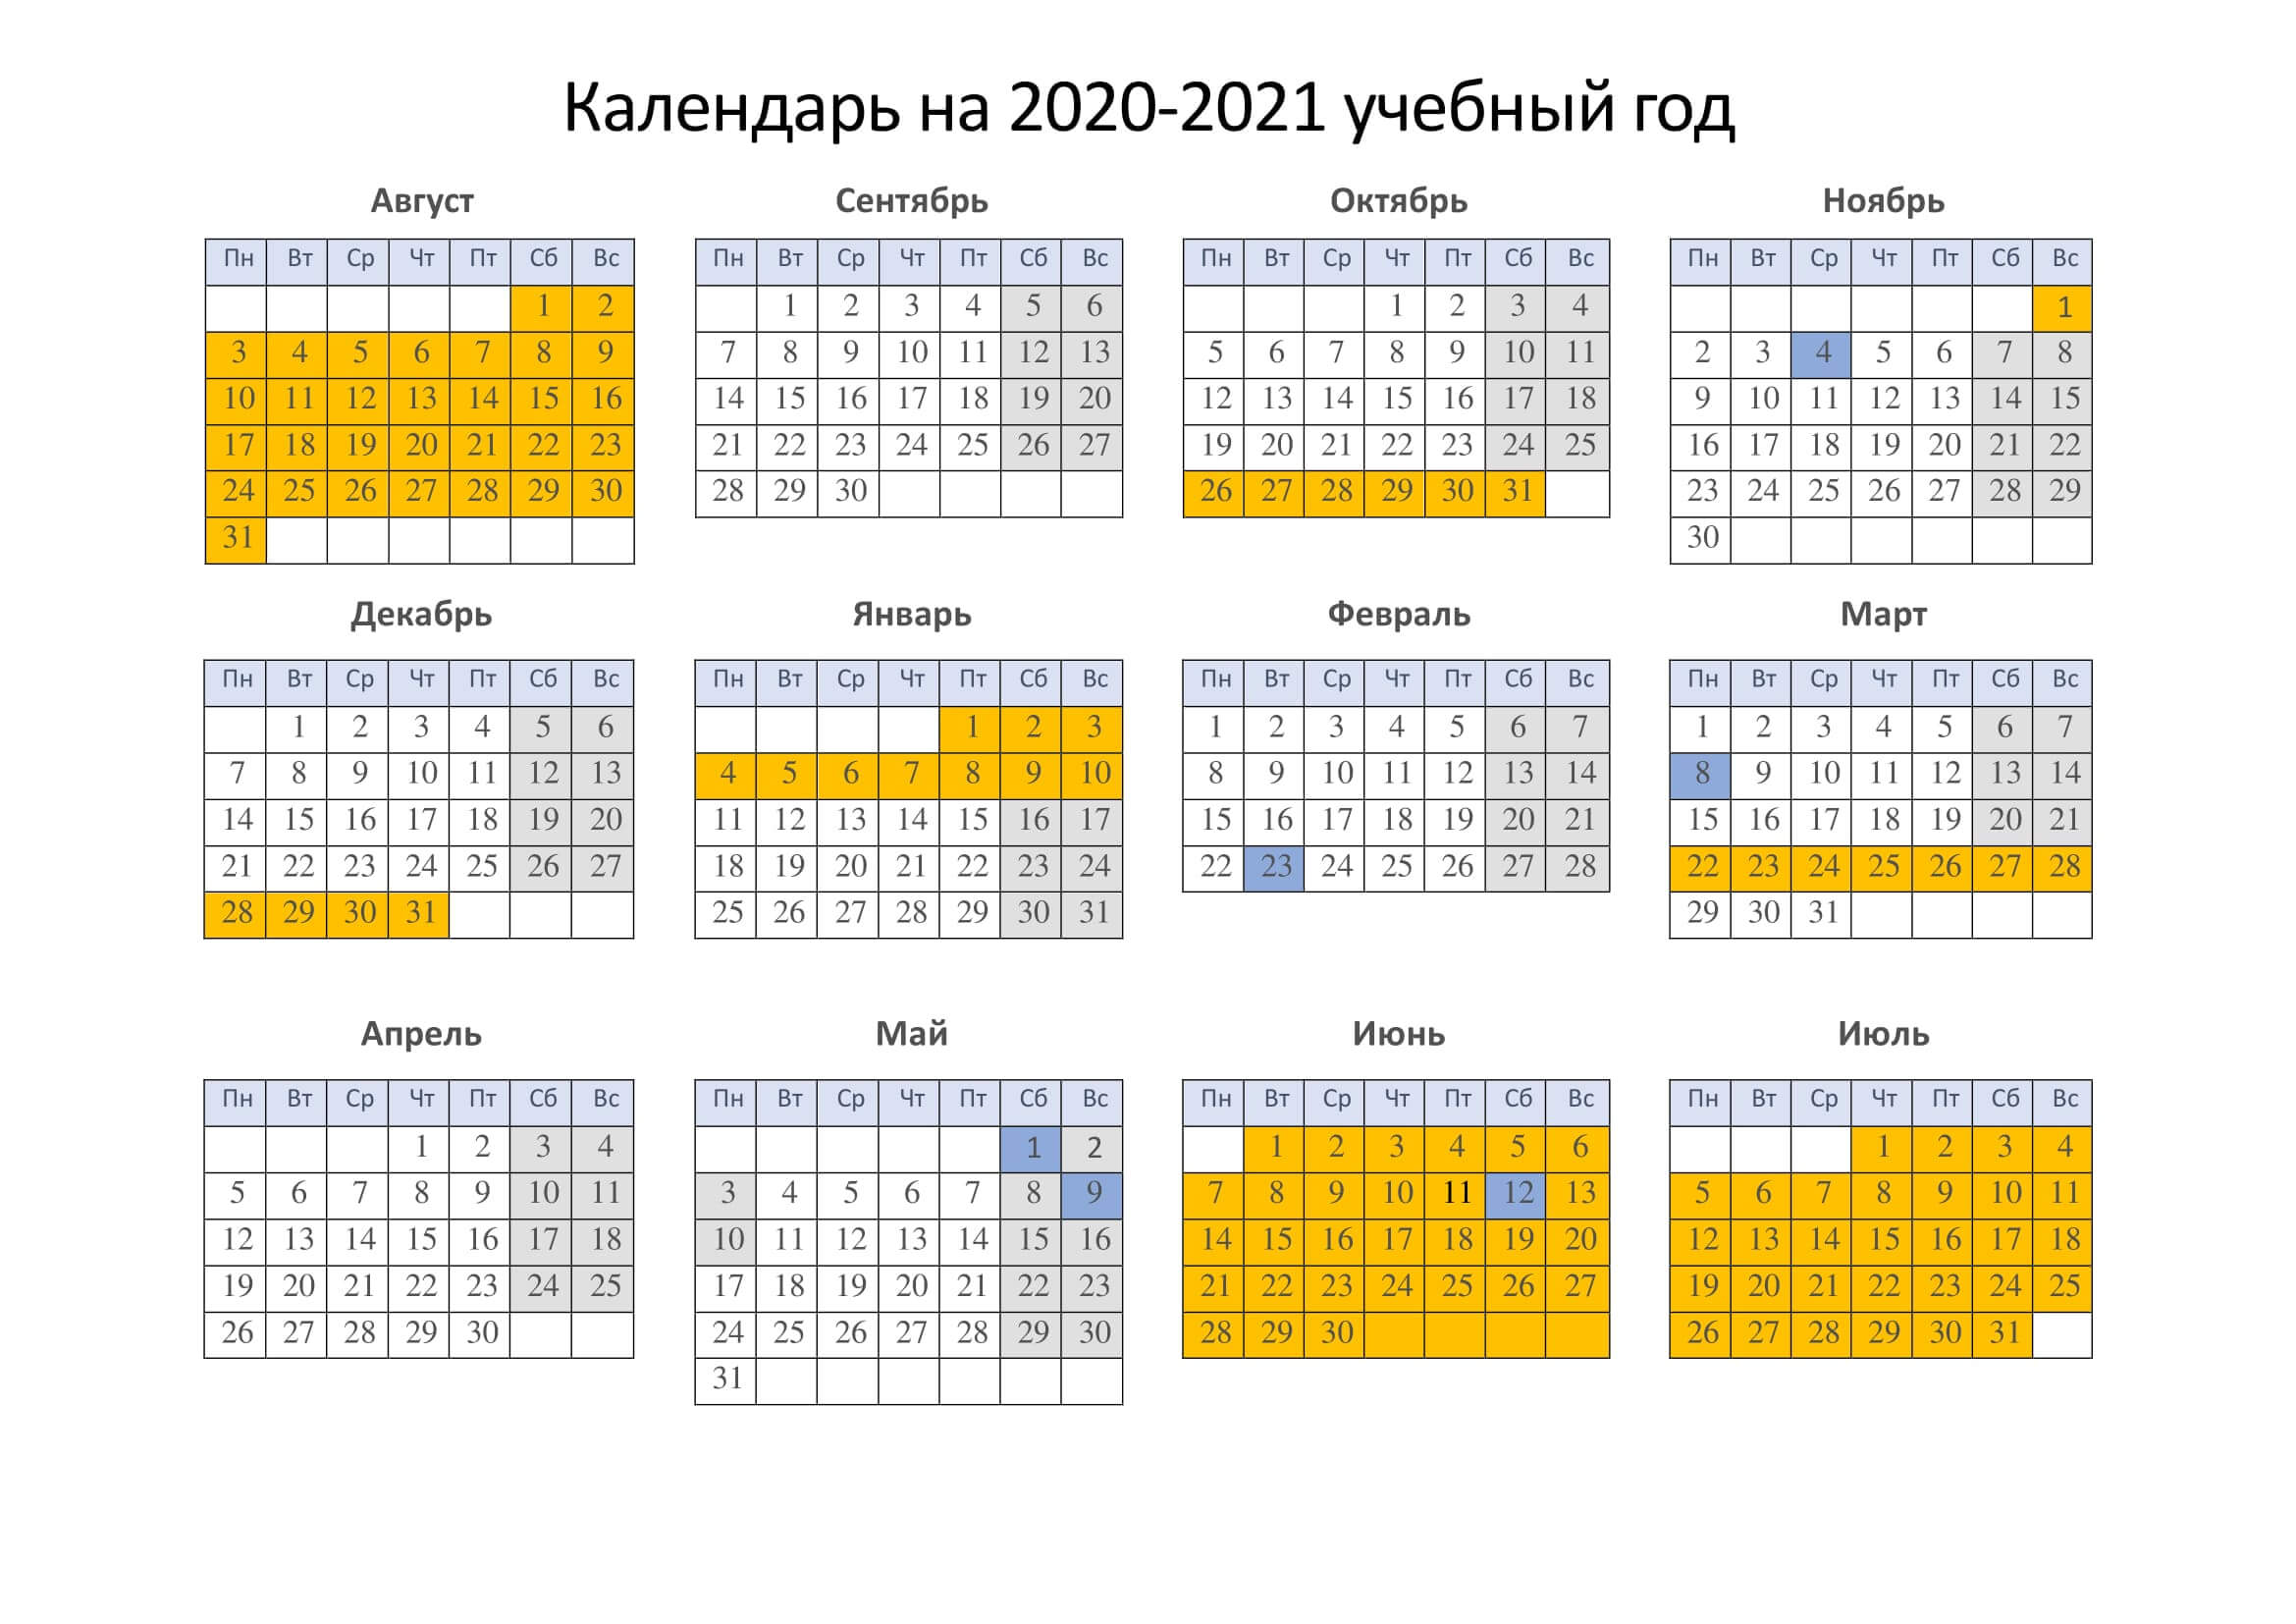 Когда каникулы у школьников 1 класса. Учебный календарь на 2021-2022 учебный год с каникулами. Учебный календарь на 2021-2022 учебный год с каникулами выходными РБ. Календарь 2021-22 учебный год. Календарь для школы на 2021-2022 учебный год.